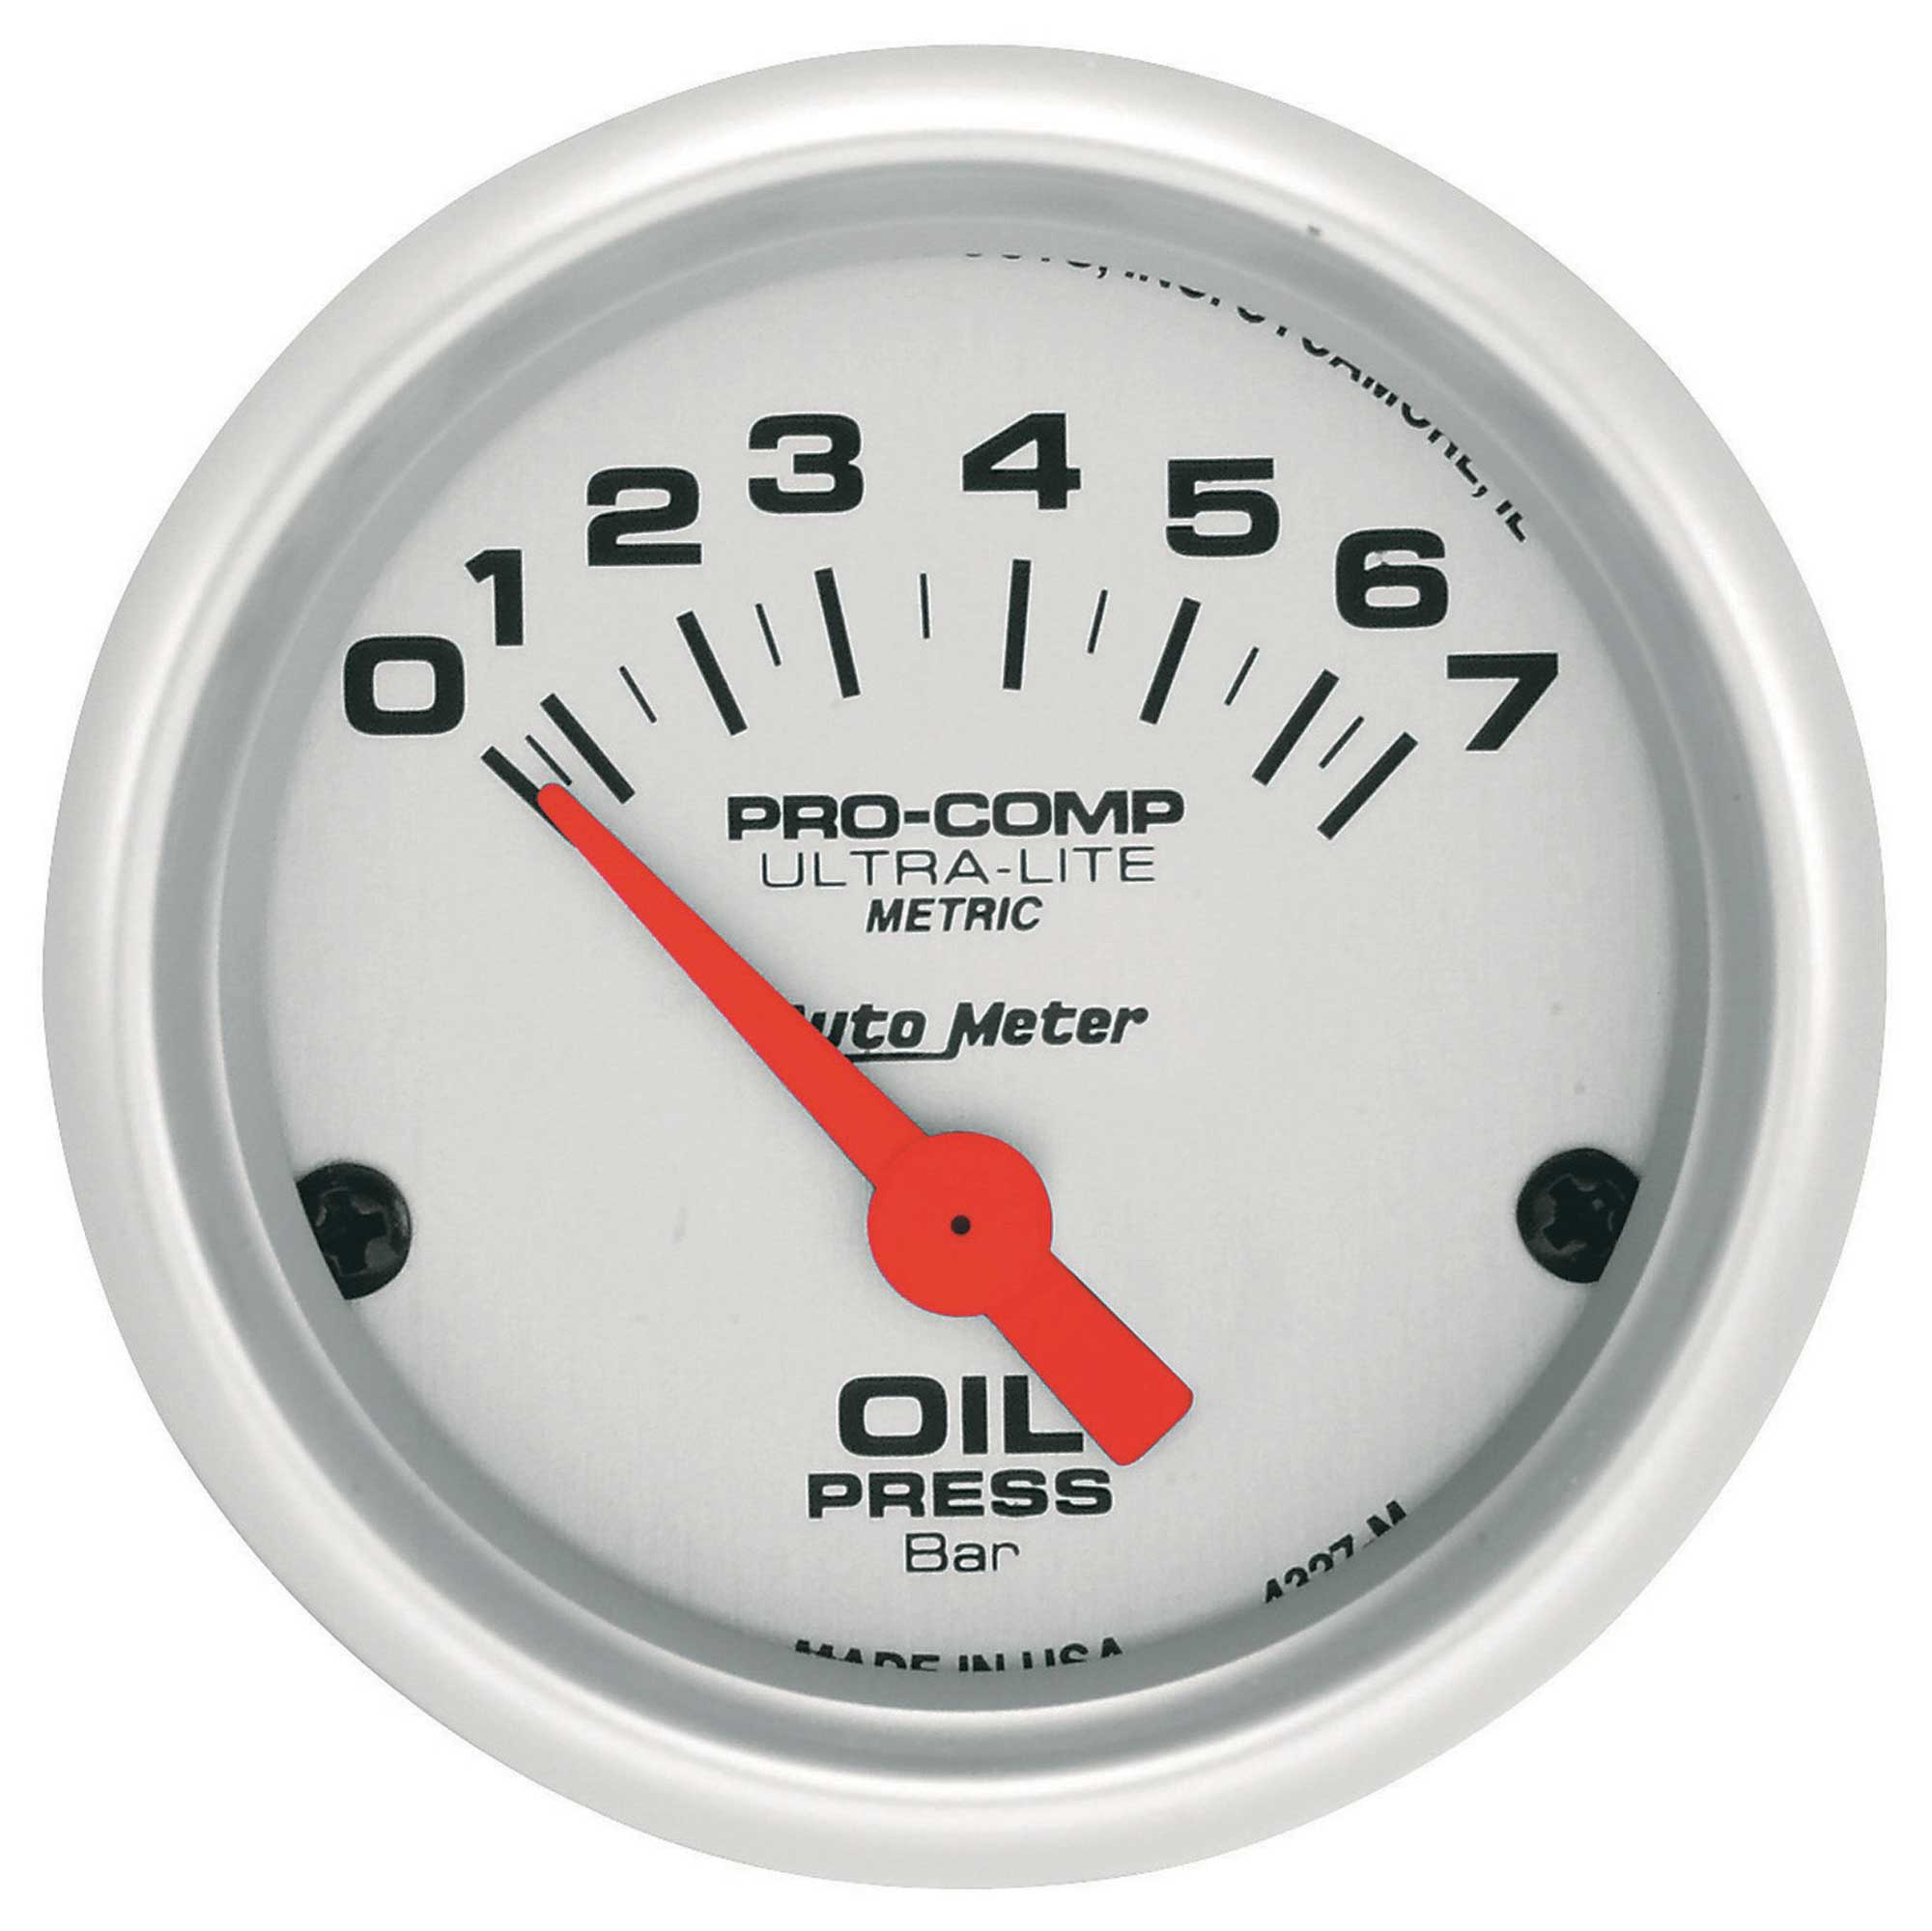 Auto Meter Oil Pressure (Bar) Pro Comp Ultra-Lite air Core Movement ...